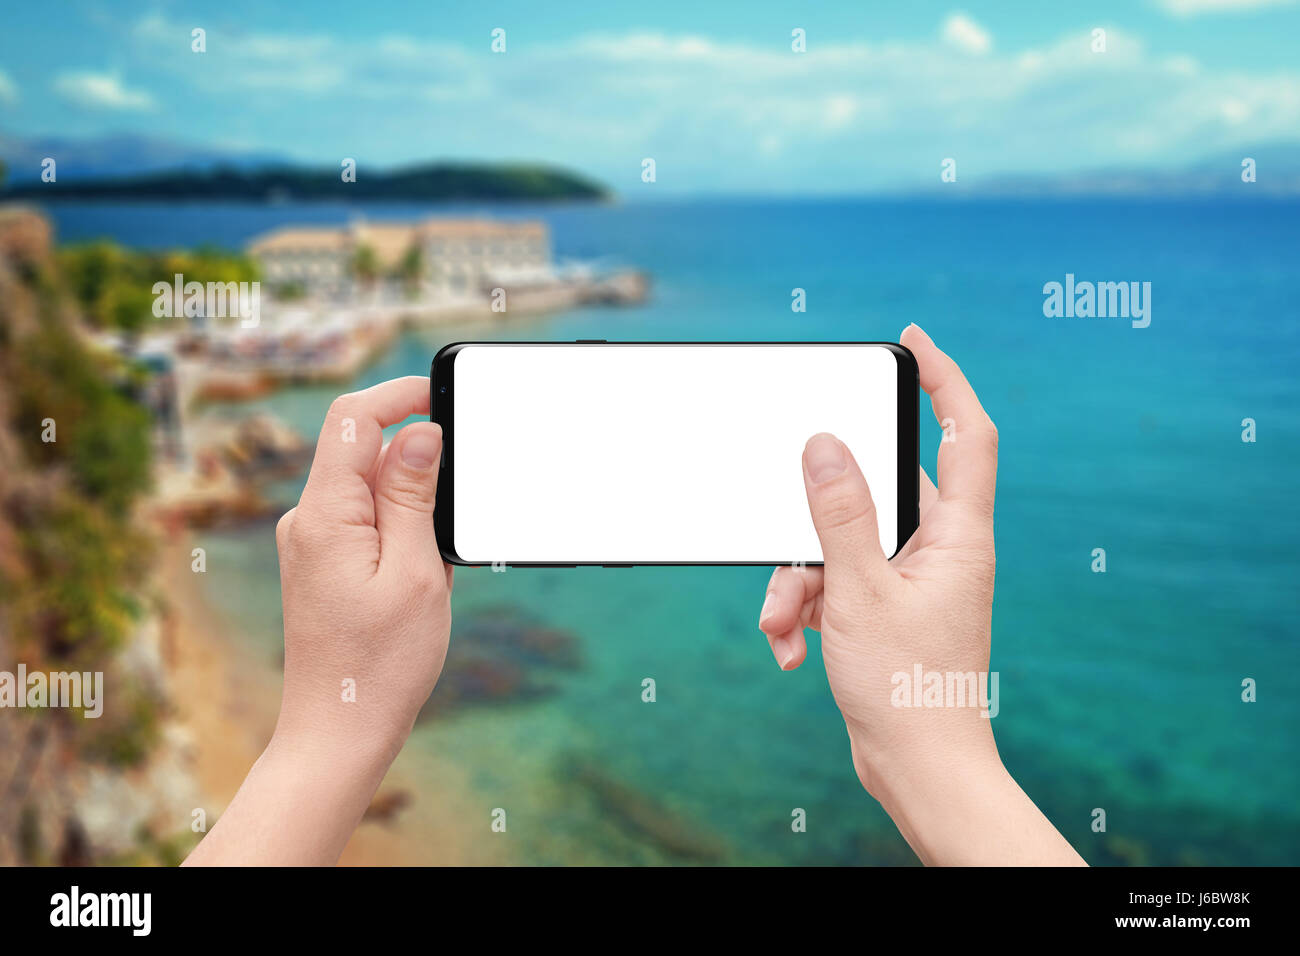 Frau zum Spiel oder app auf dem Handy mit isolierten weißen Bildschirm verwenden. Küste und Meer im Hintergrund. Stockfoto